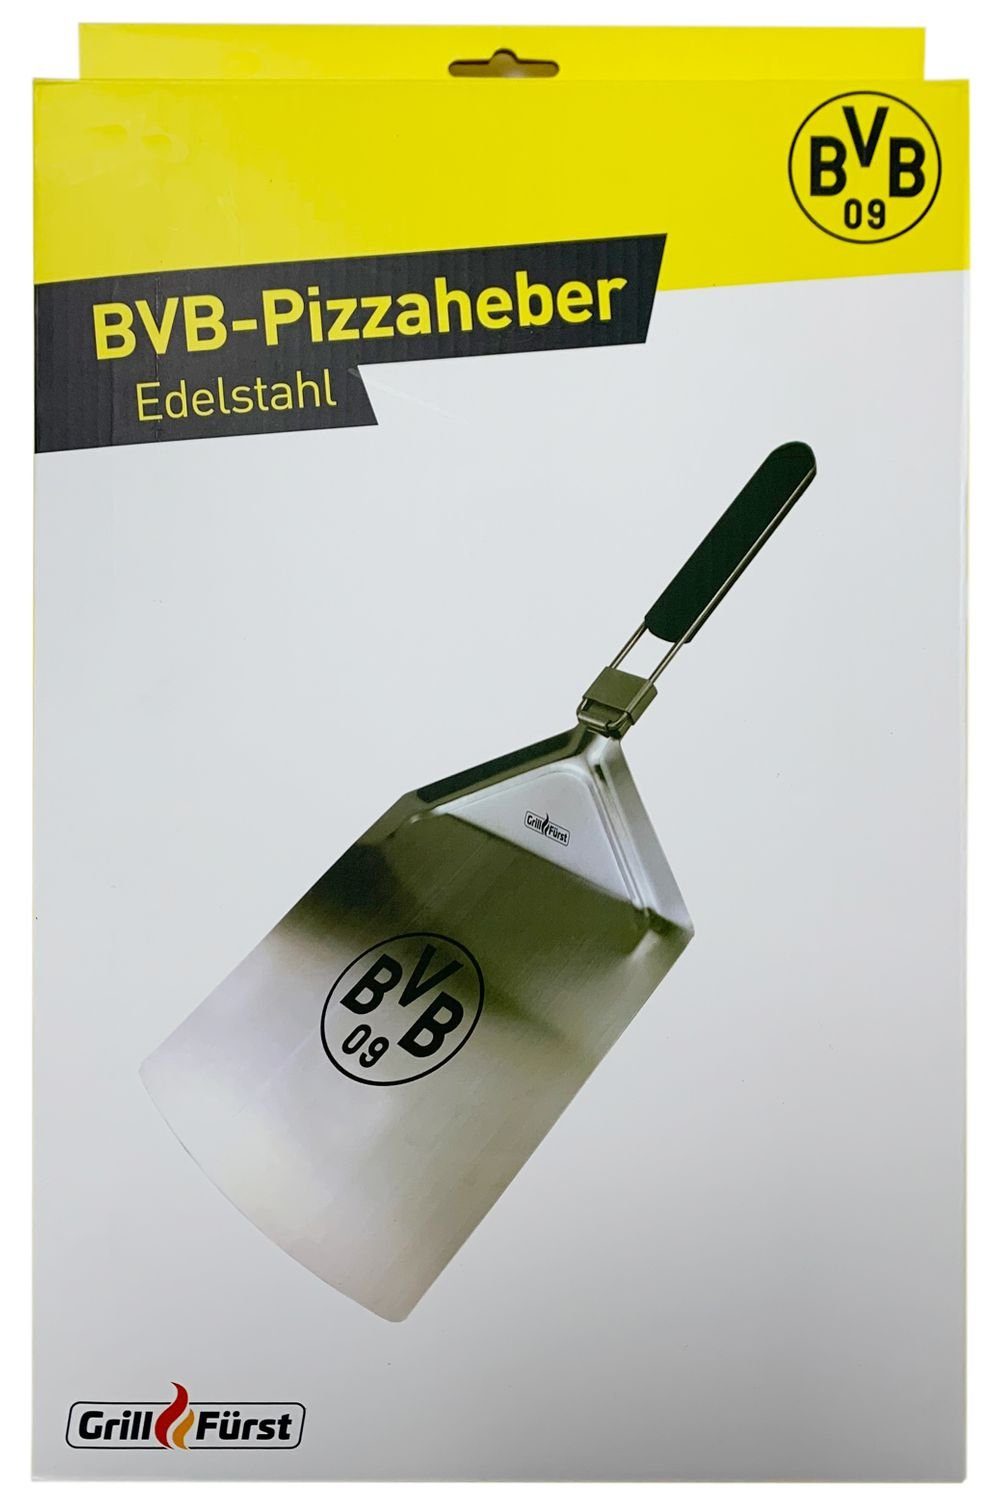 Grillfürst Pizzaschieber Grillfürst klappbar Dortmund Edition Pizzaheber - Pizzaschieber Borussia / Edelstahl